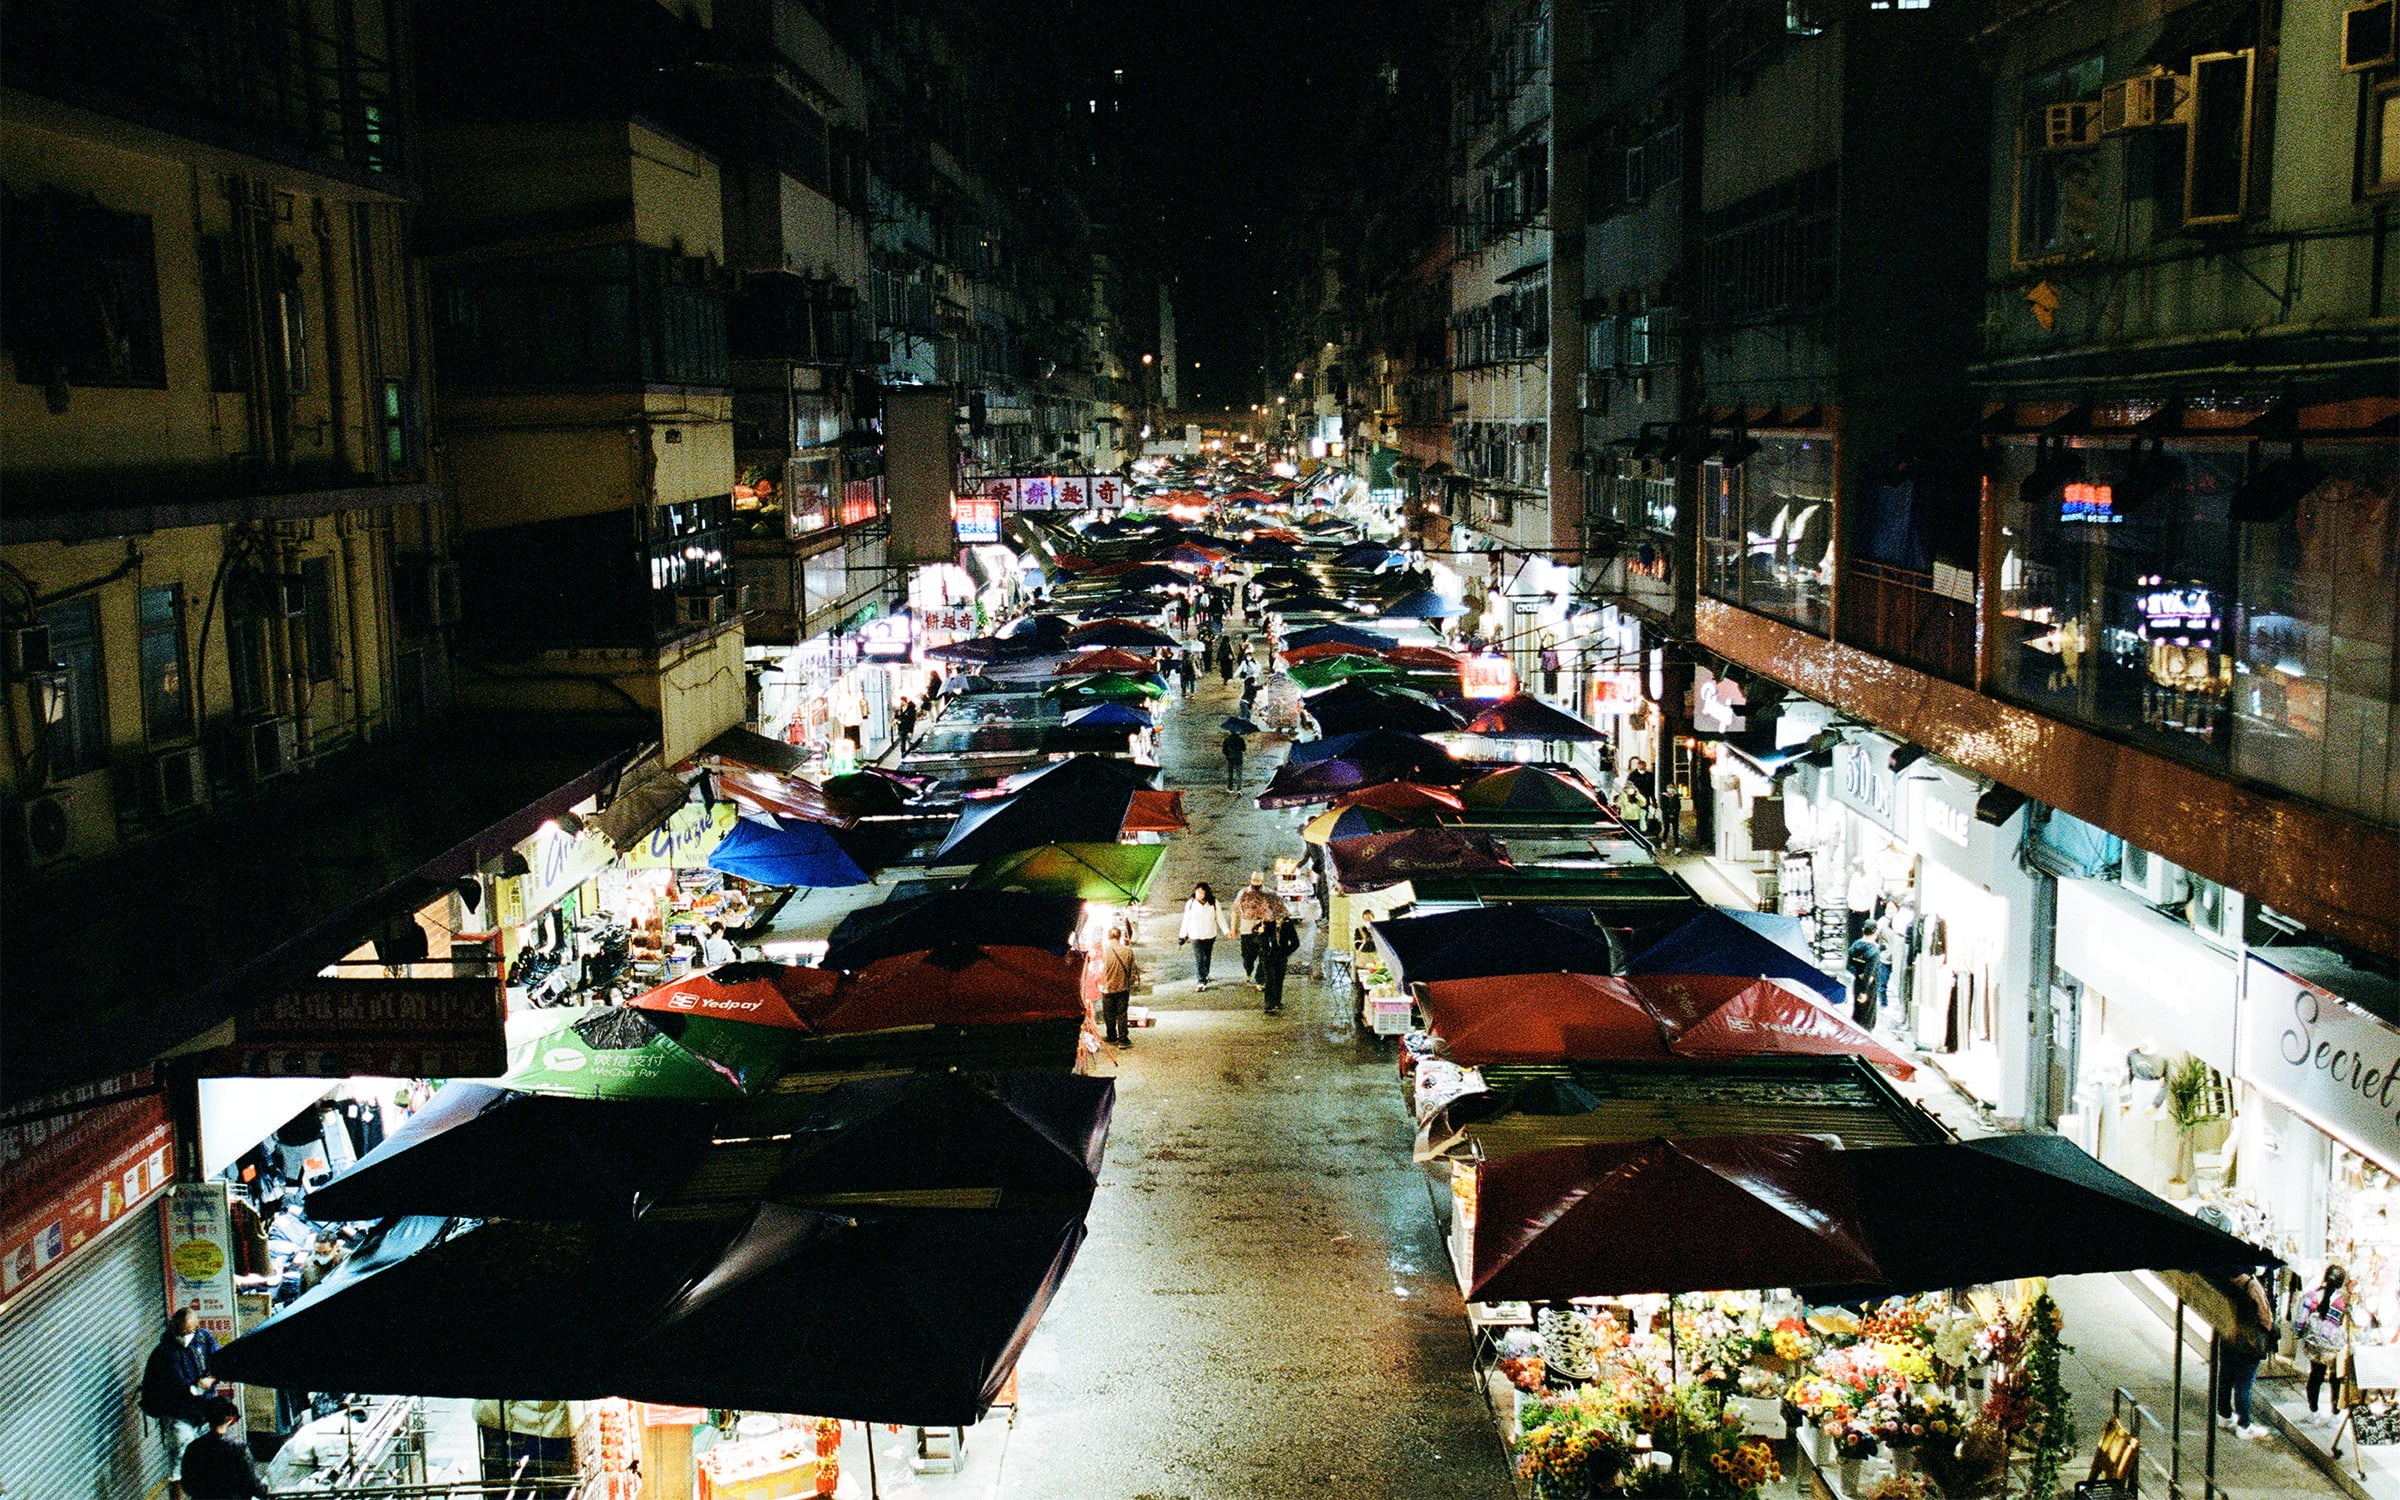 Une scène de nuit au marché de Kowloon. Photographie de Luke Casey pour Art Basel.